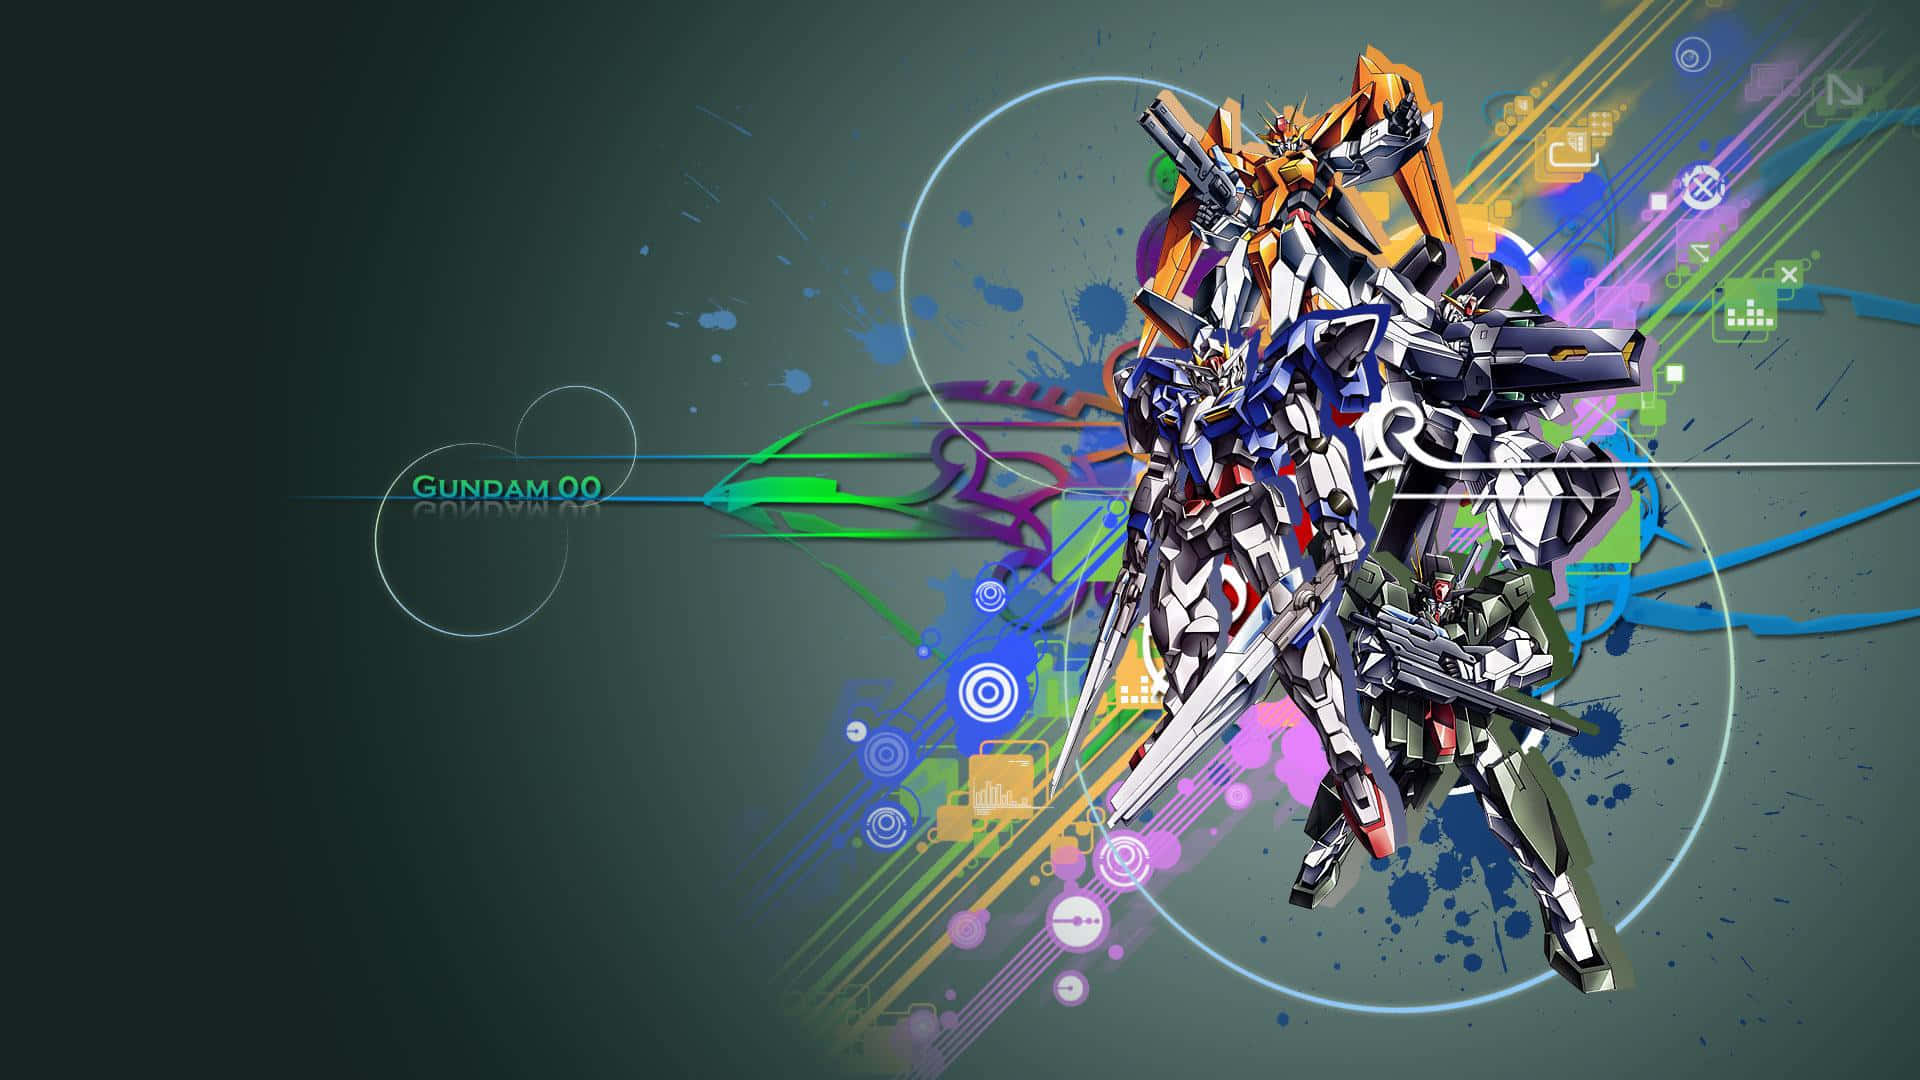 Fondode Pantalla Minimalista De Gundam Para Computadora. Fondo de pantalla